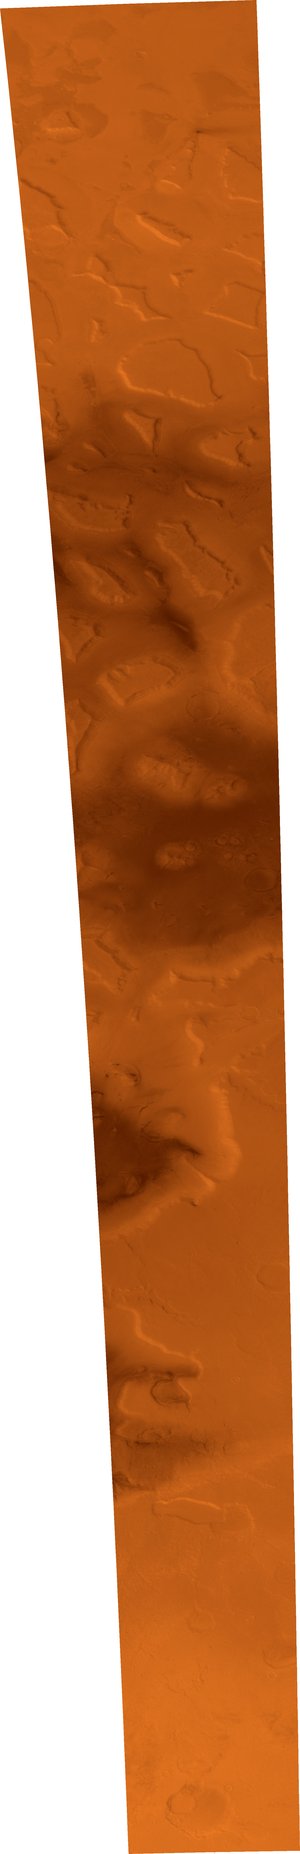 Ismenius Lacus region of Mars